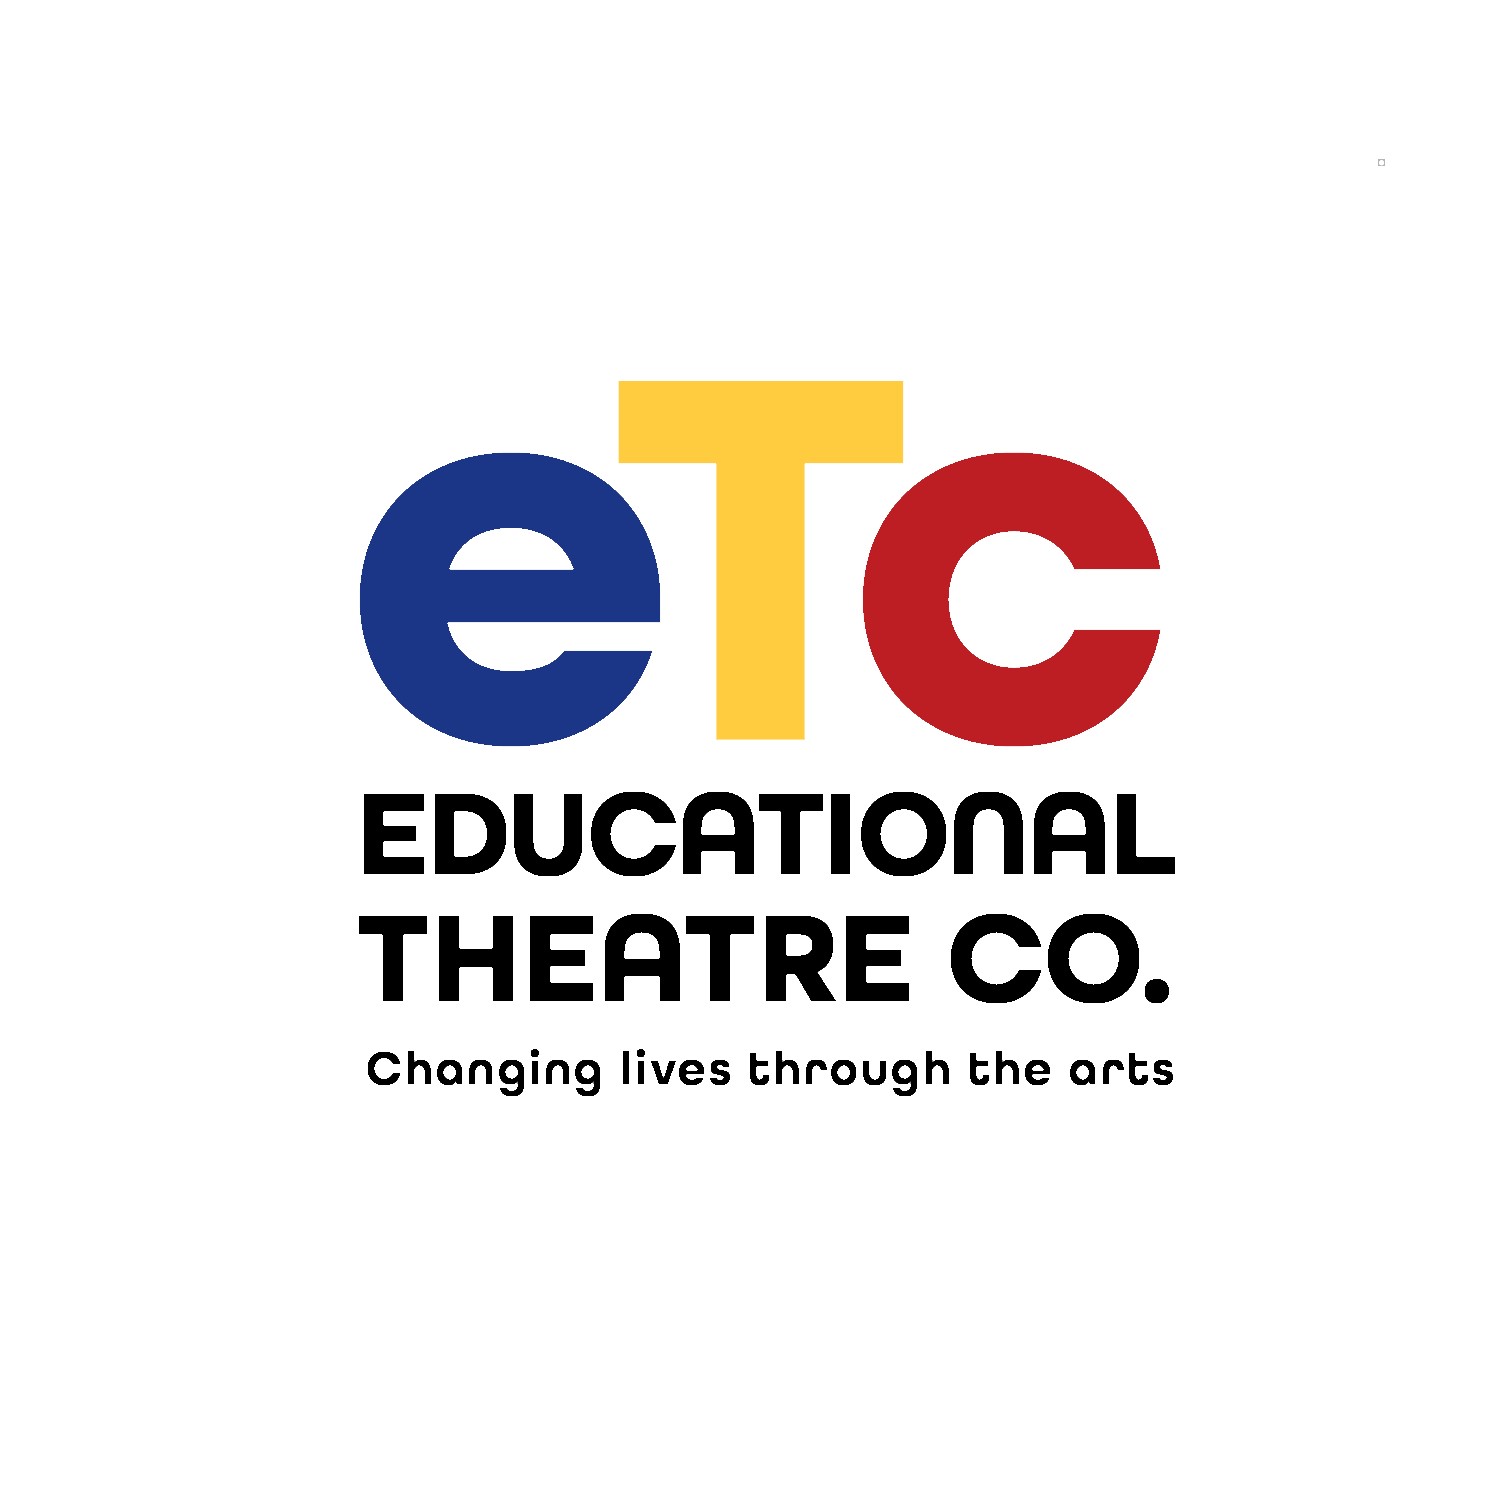 Logotipo de la compañía de teatro educativo